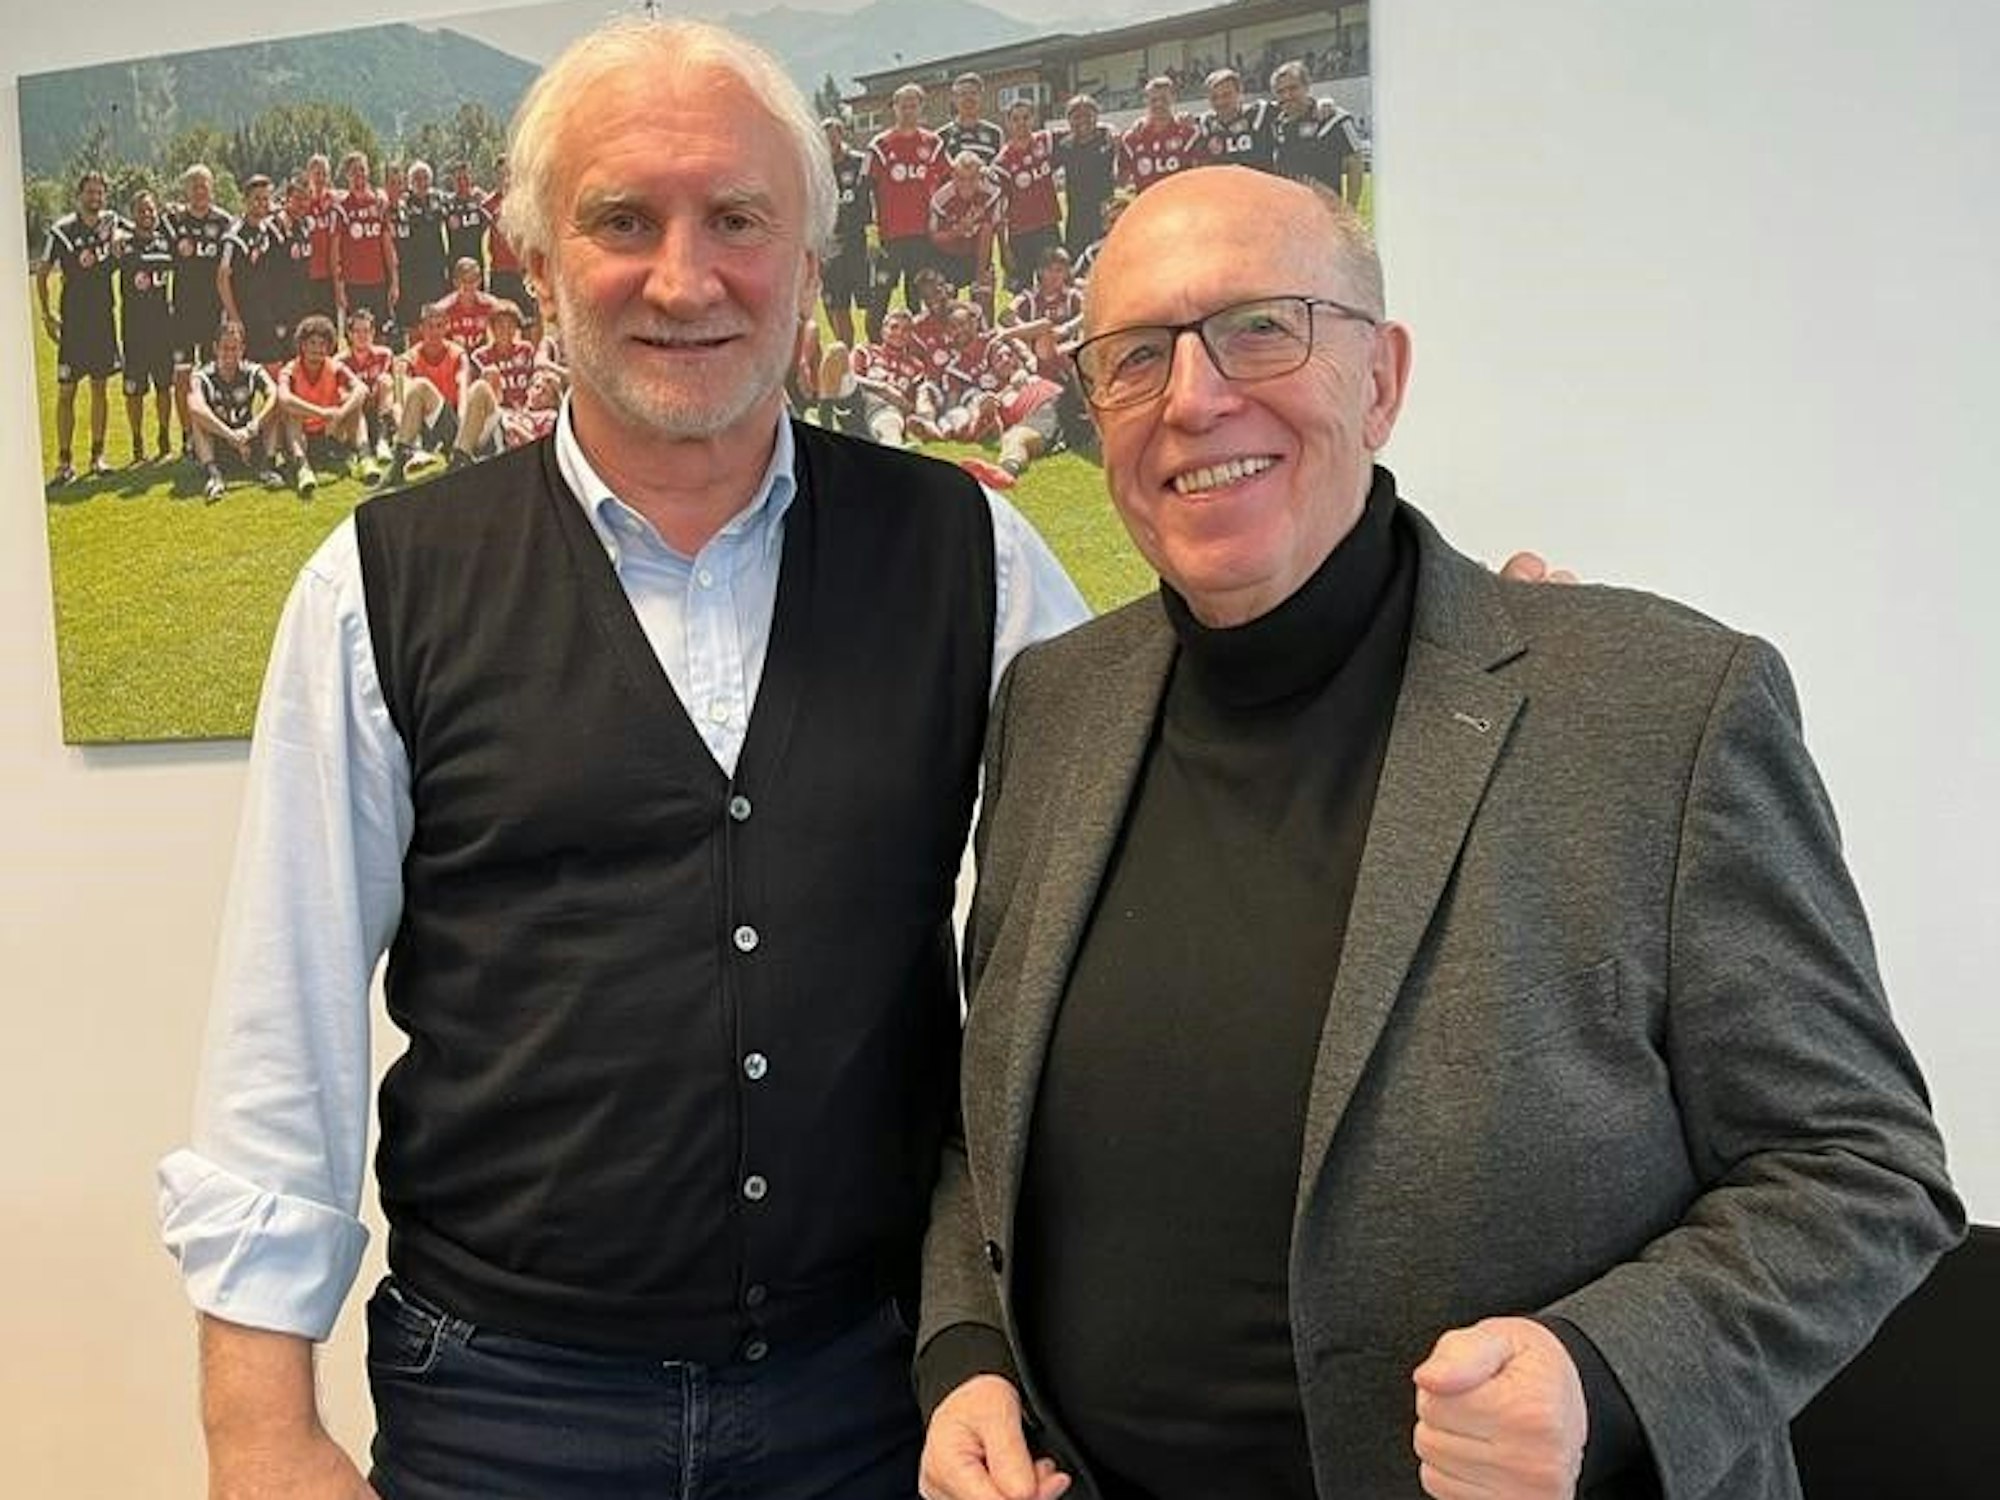 Rudi Völler und Reiner Calmund stehen nach dem Interview zusammen.